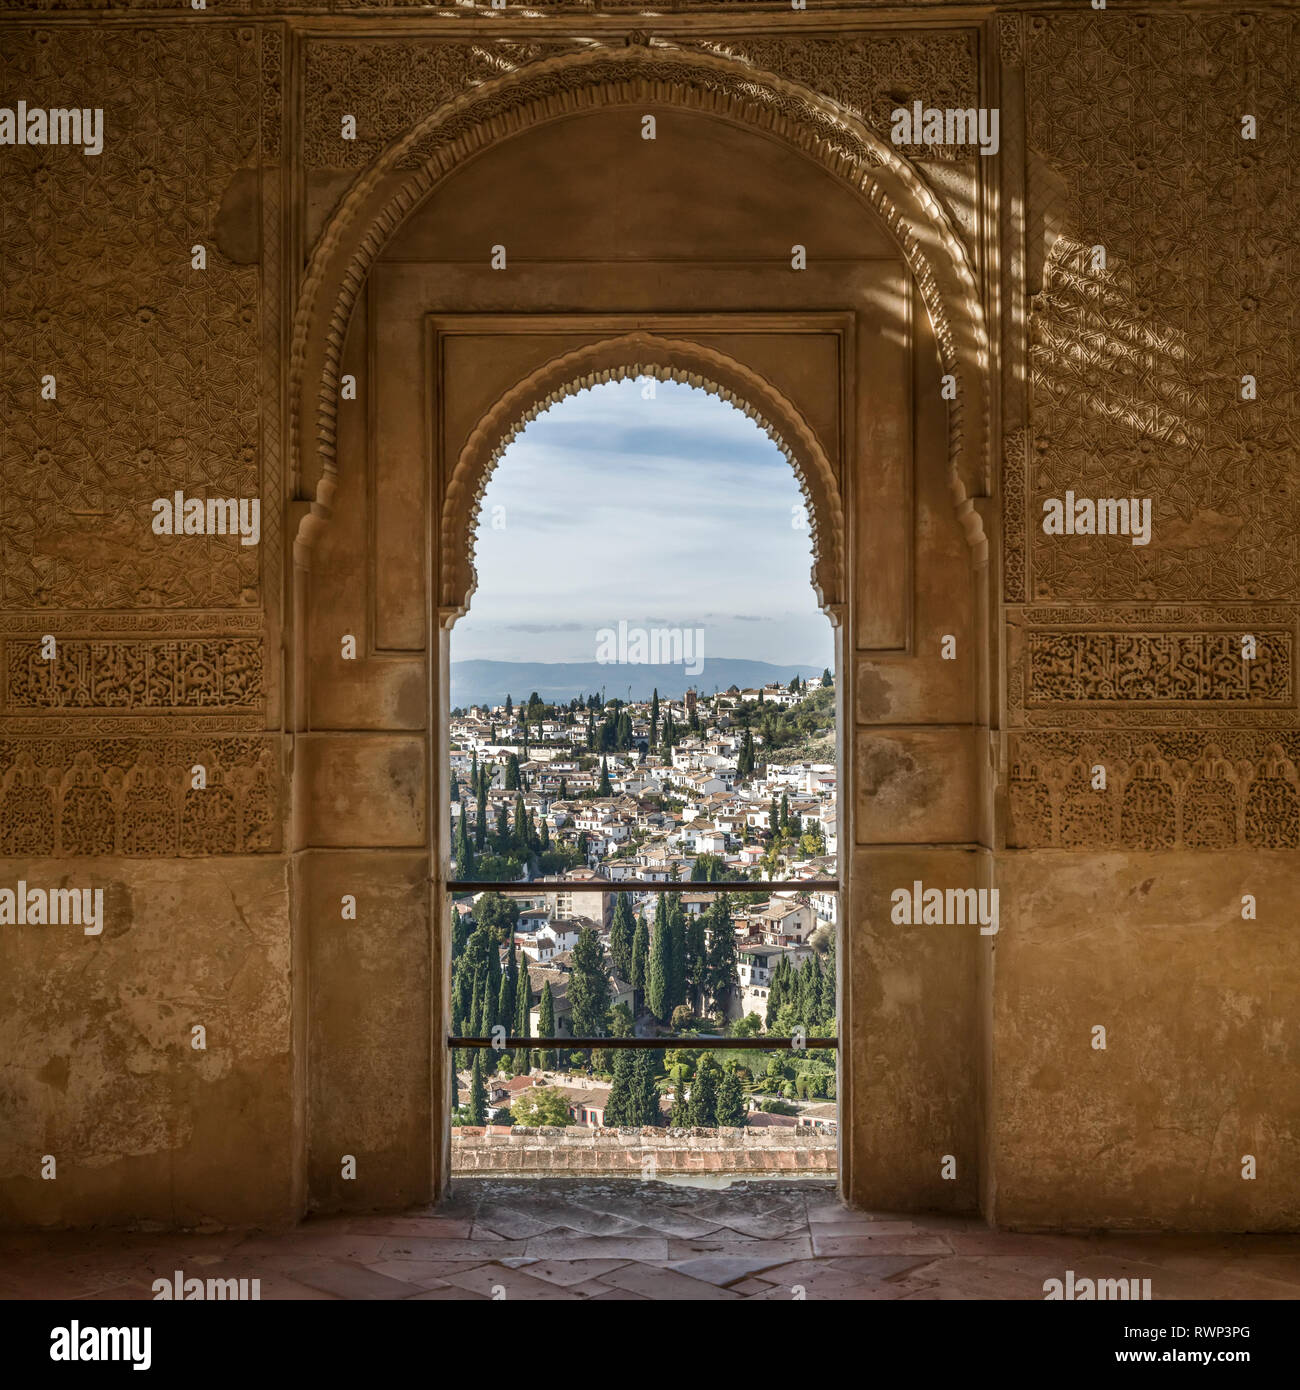 Ornati in dettaglio su una parete interna della facciata con una vista della città di Granada, Granada, provincia di Granada, Spagna Foto Stock